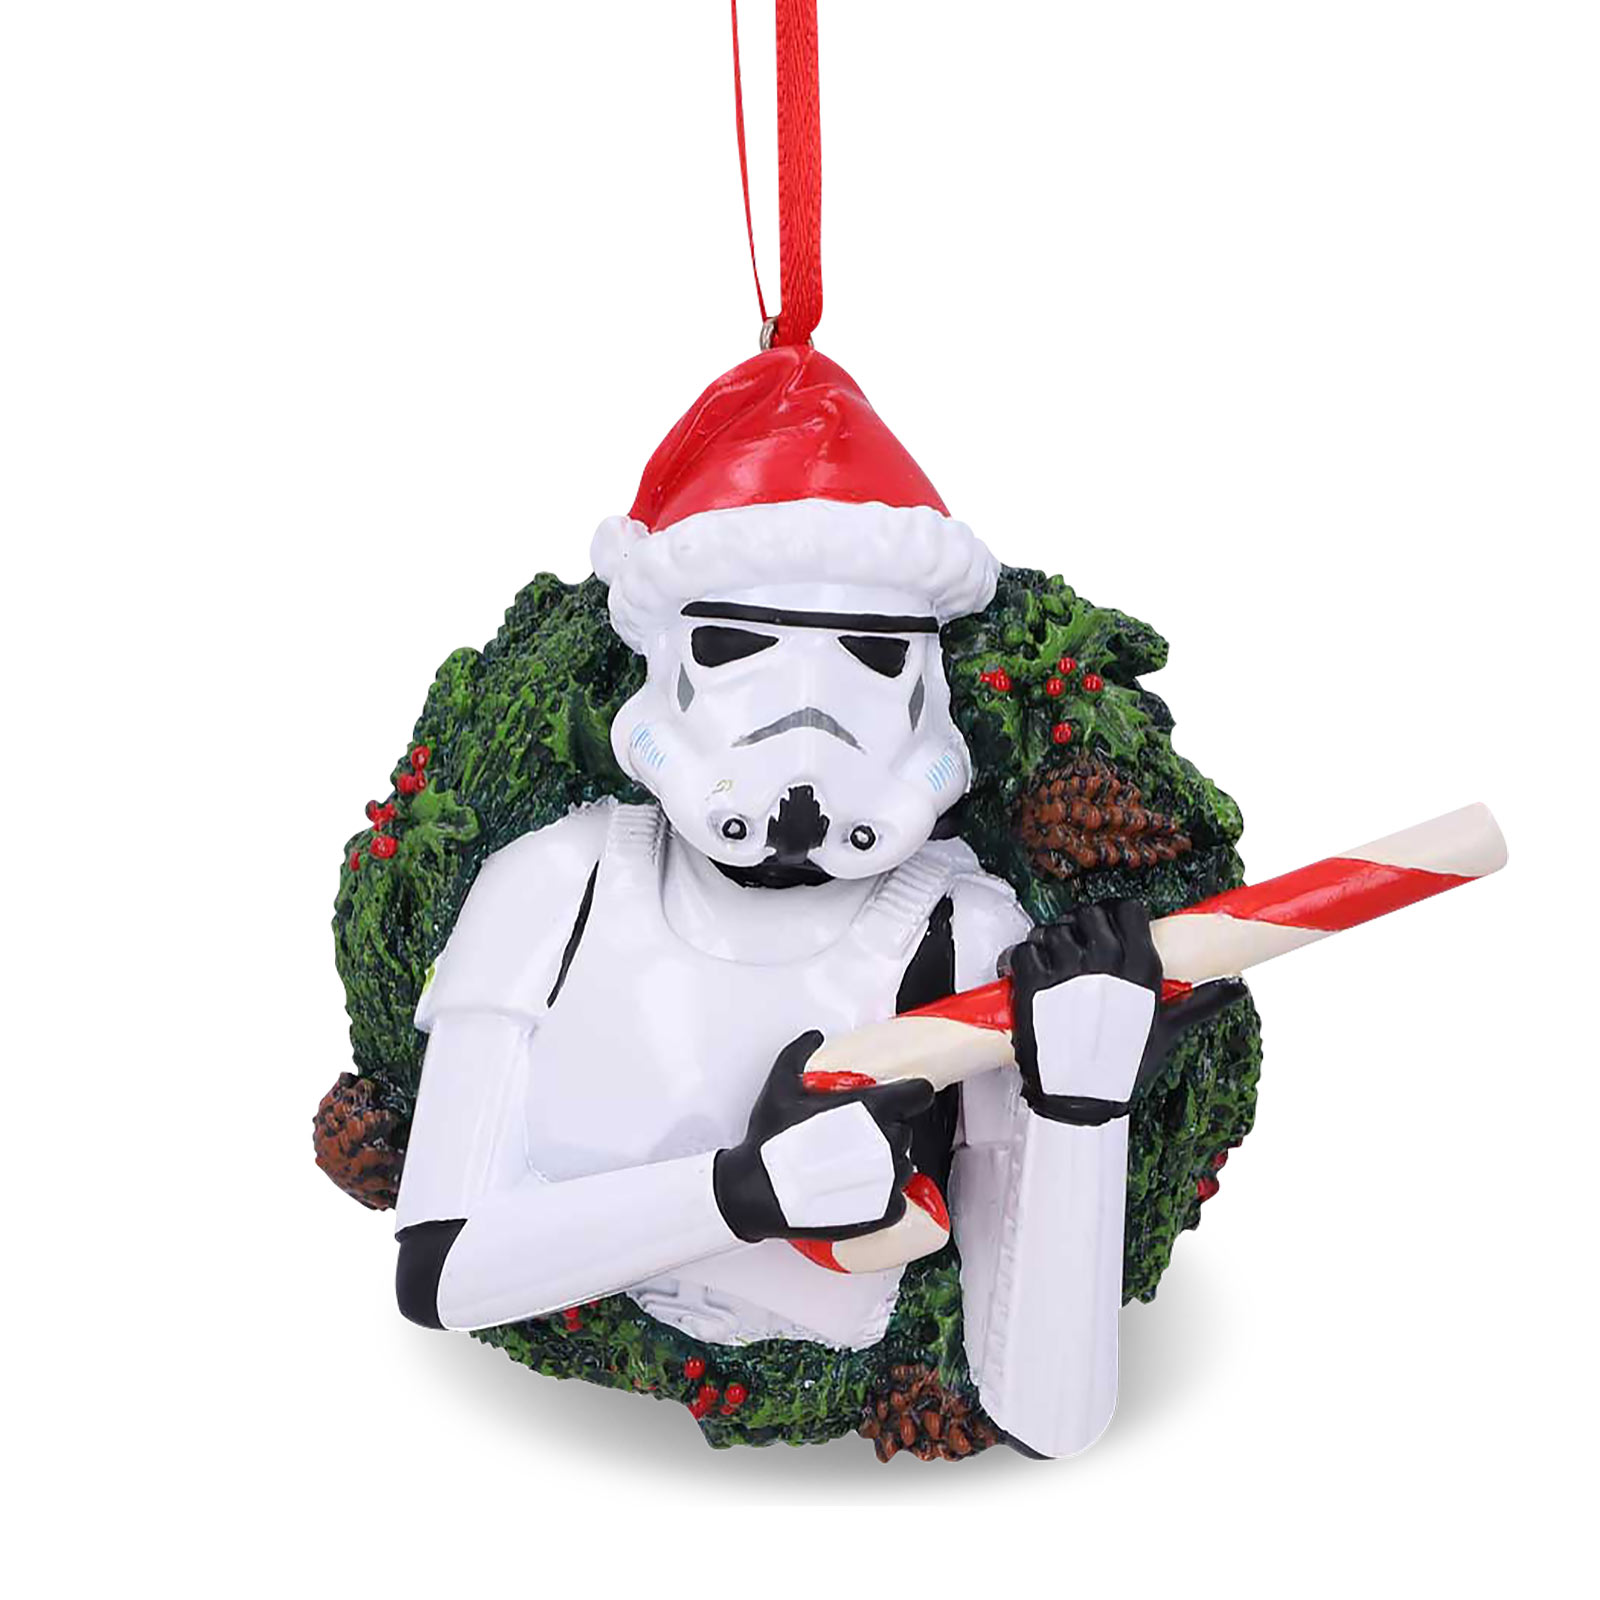 Stormtrooper Weihnachtskranz Weihnachtsbaum-Schmuck - Star Wars